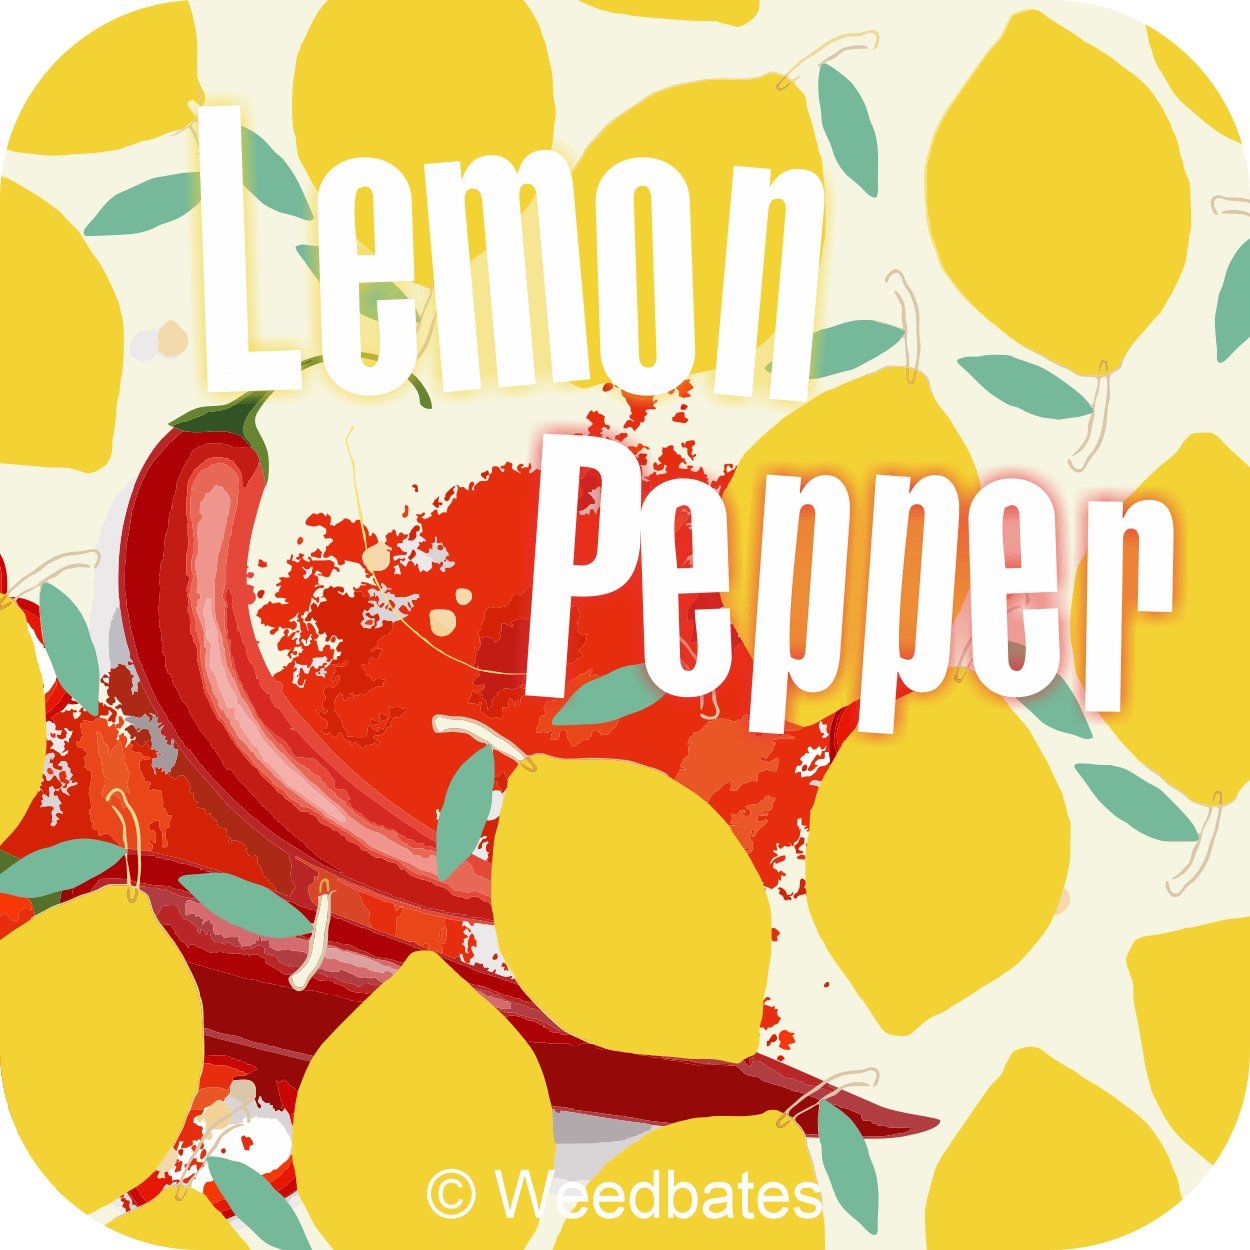 Lemon Pepper cannabis strain